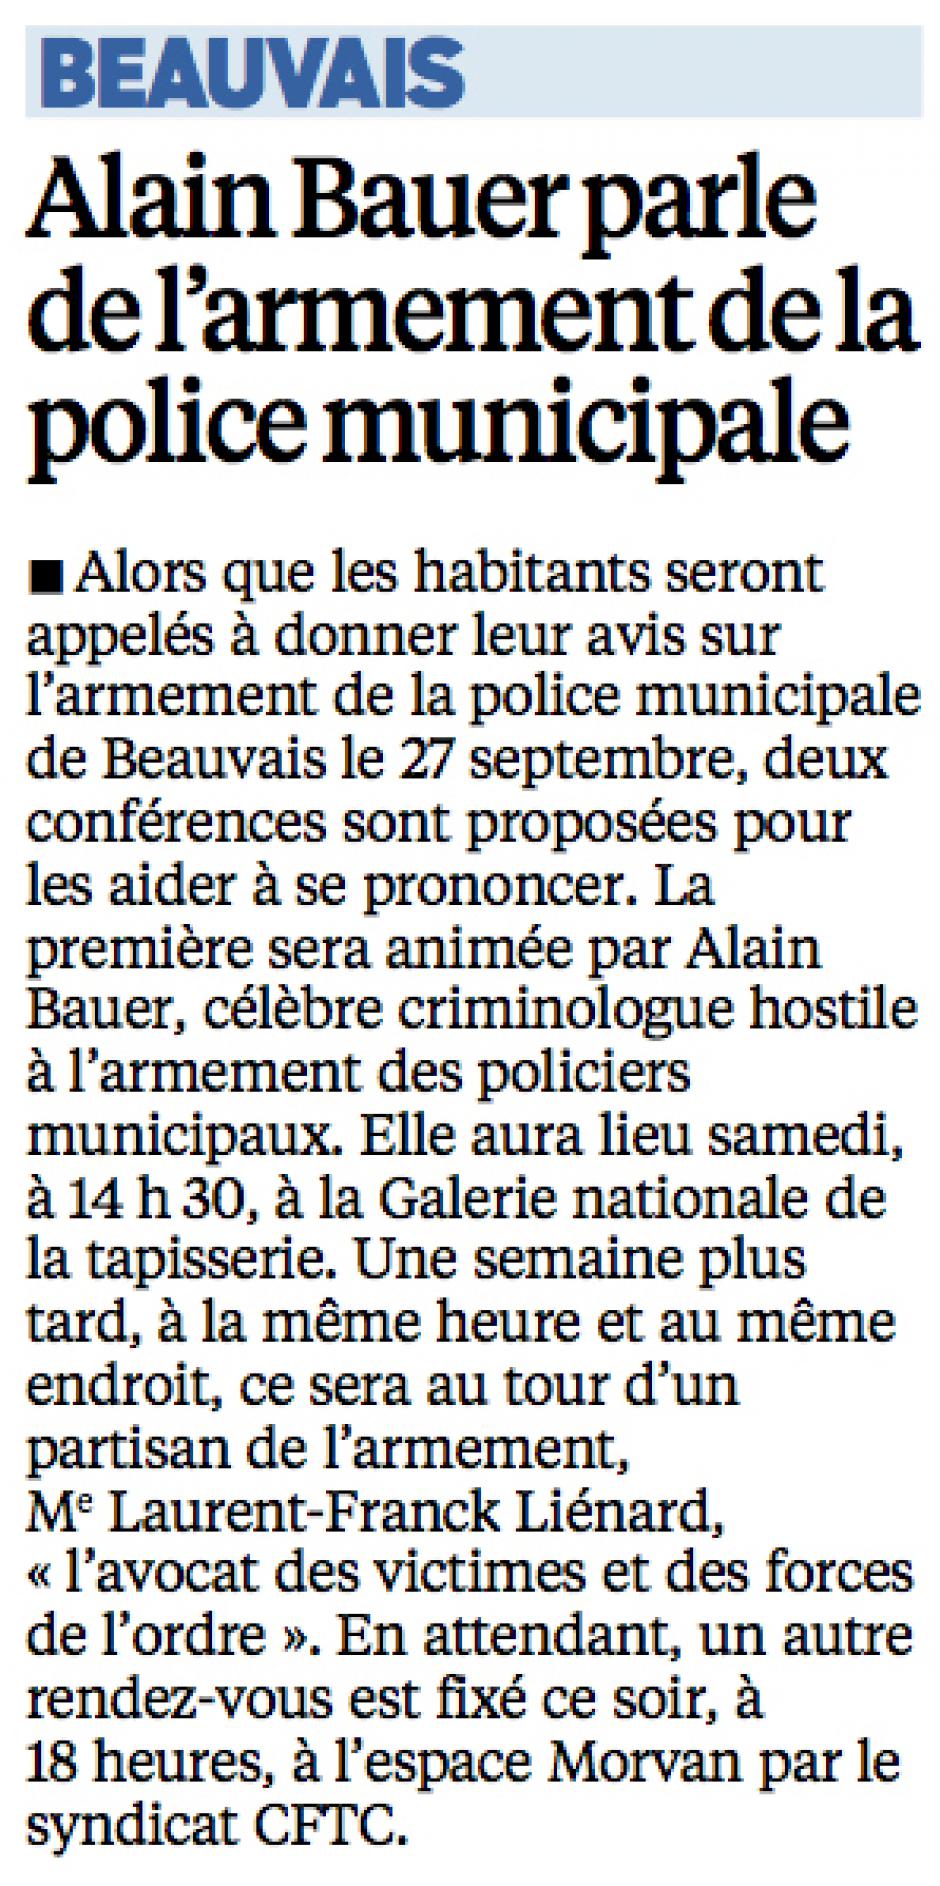 20150907-LeP-Beauvais-Bauer parle de l'armement de la police municipale